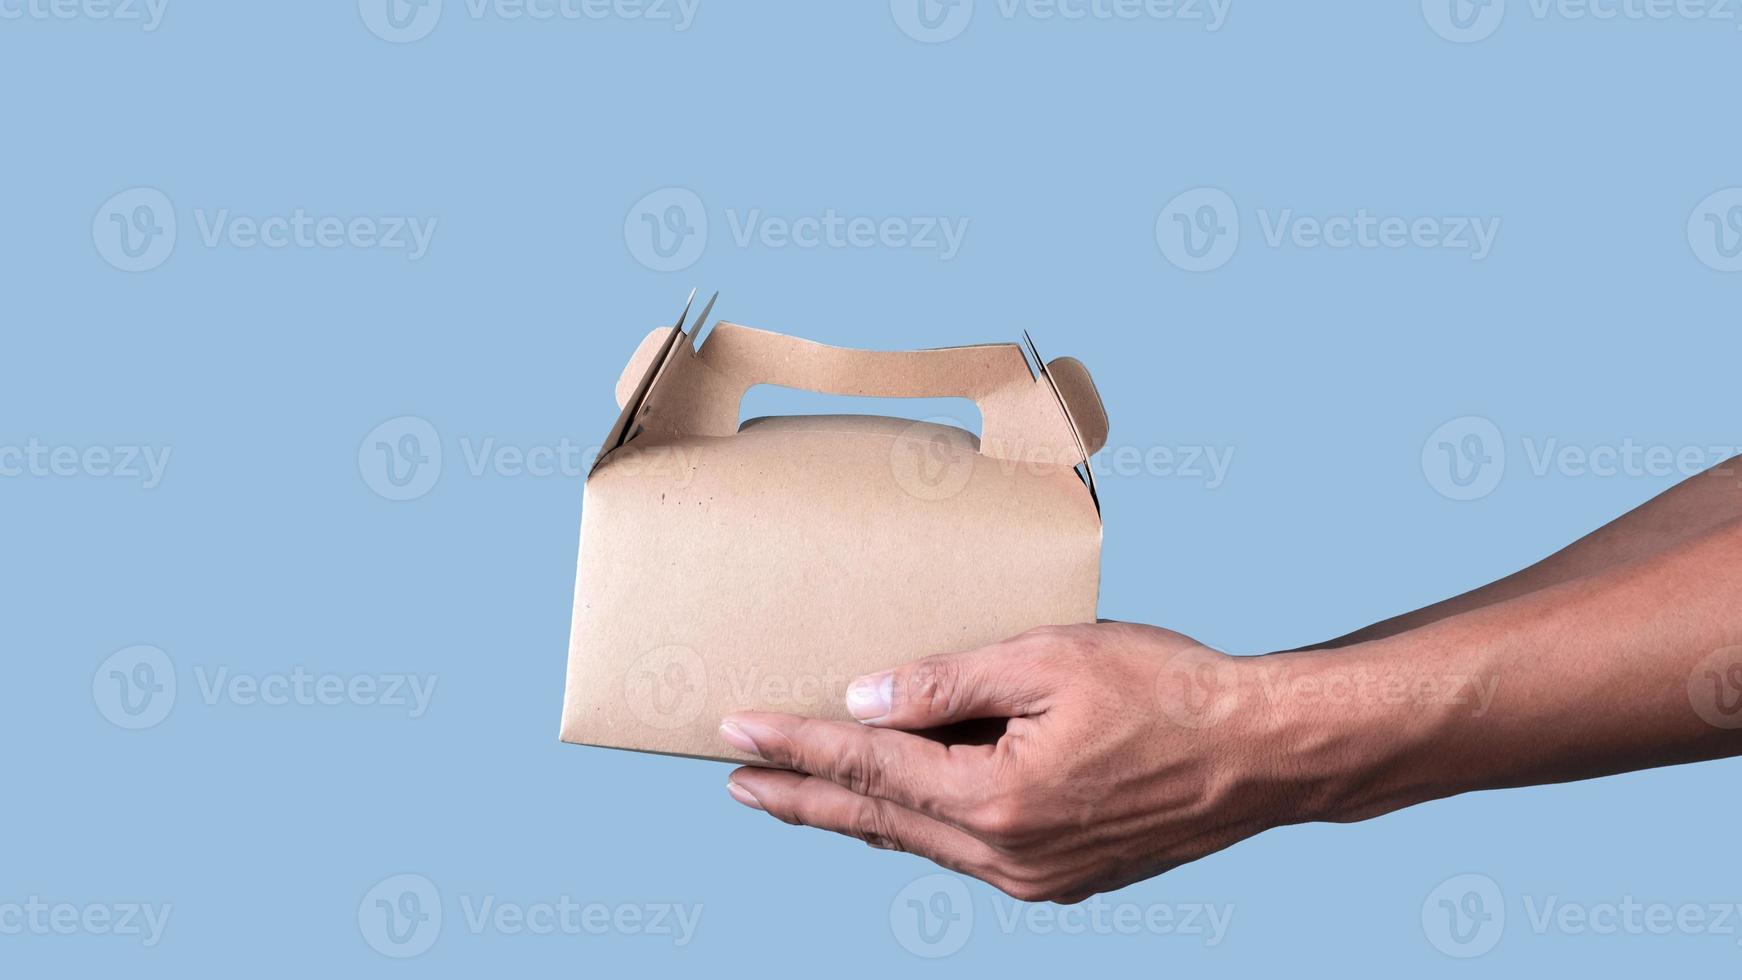 mannetje hand- Holding bruin ecologisch pakket doos gemaakt van natuurlijk karton Aan licht blauw achtergrond. verpakking, winkelen, voedsel levering concept foto